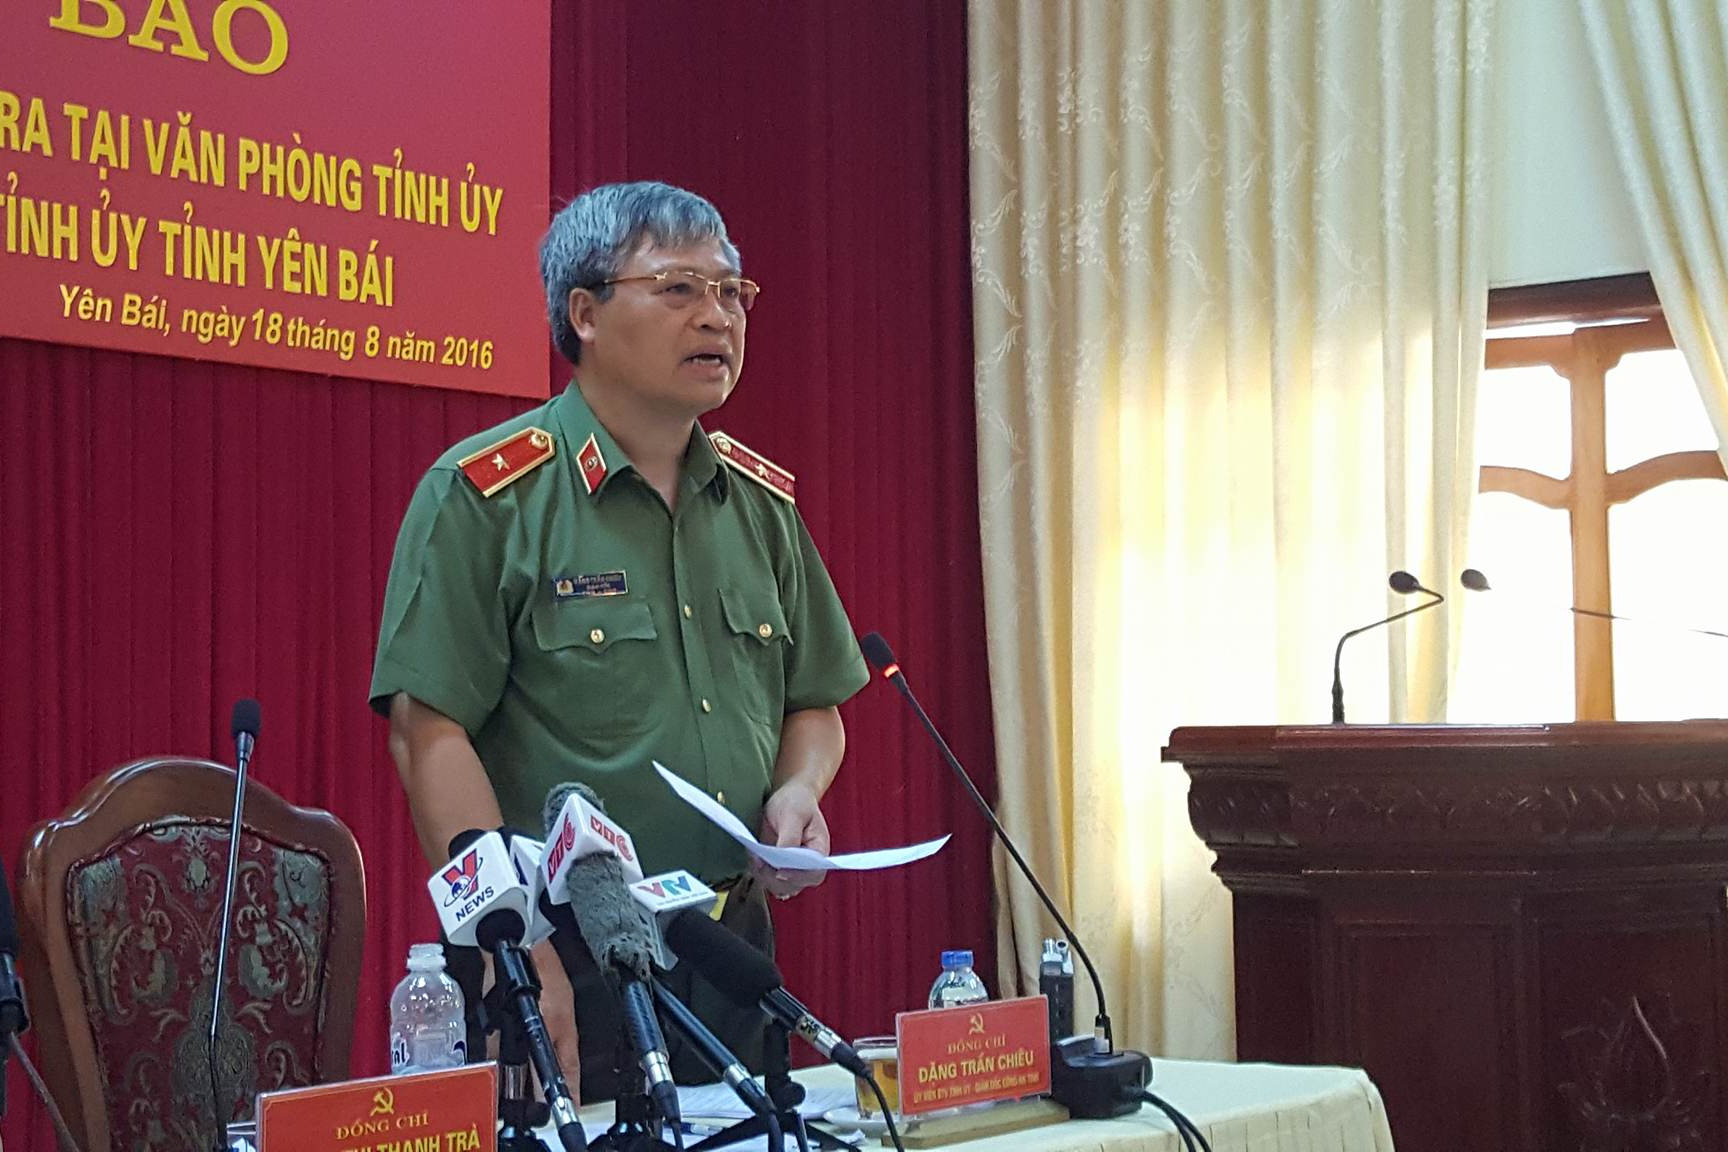 
Thiếu tướng Đặng Trần Chiêu, Giám đốc Công an tỉnh Yên Bái.
